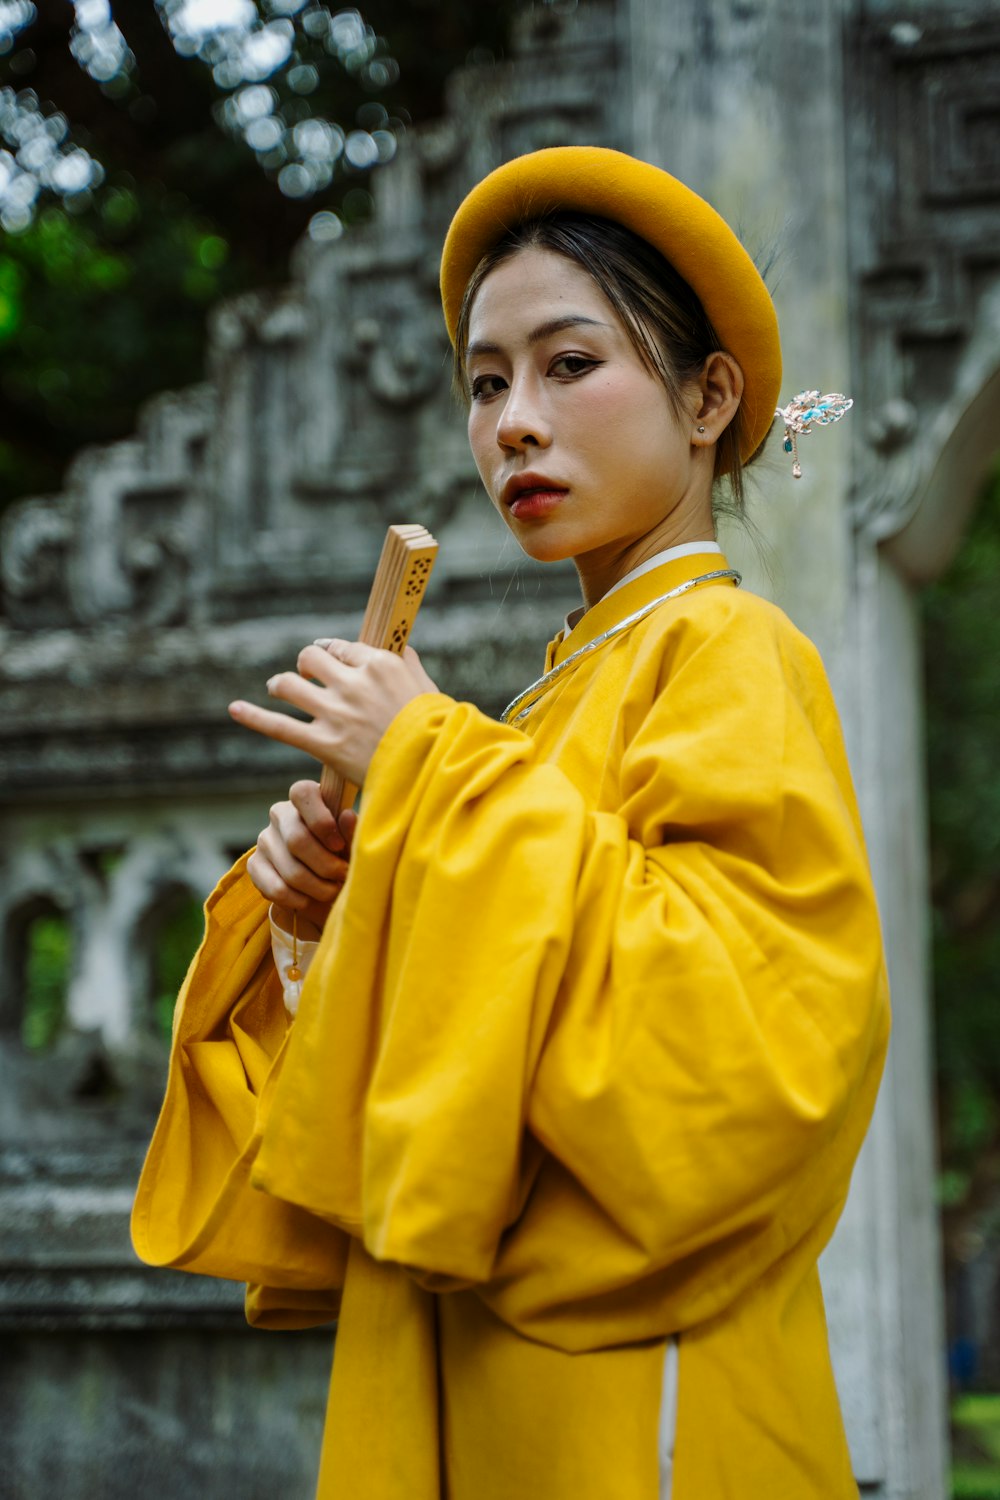 Eine Frau im gelben Outfit hält einen Stock